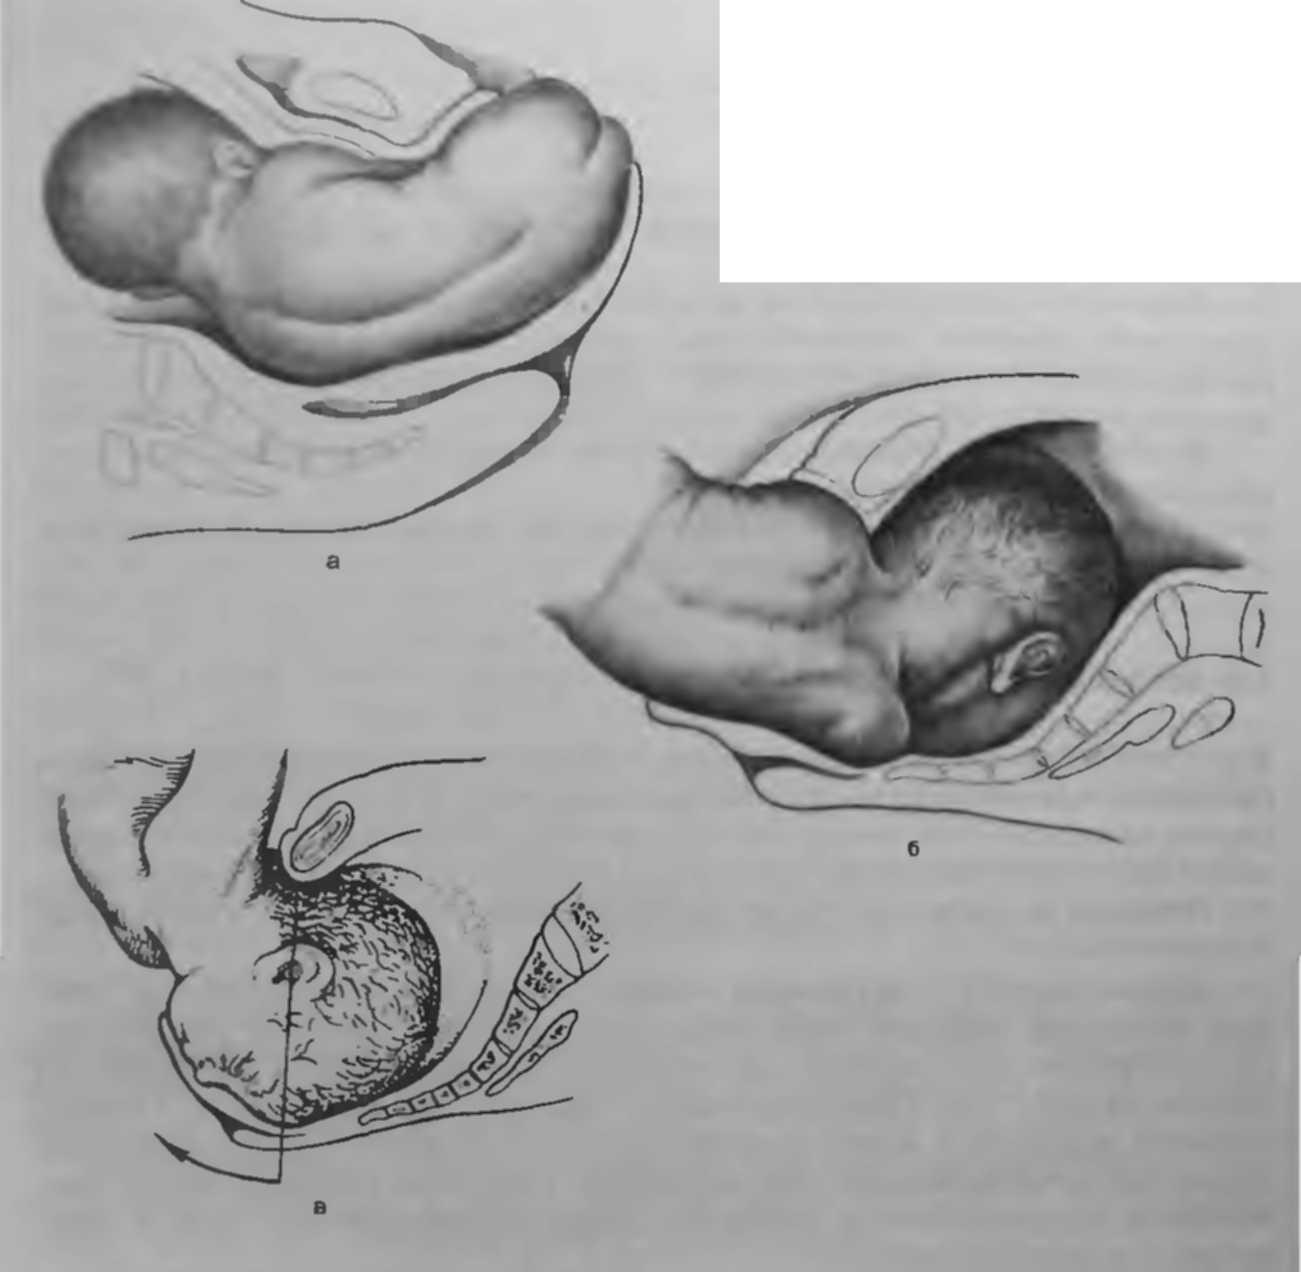 38 недель раскрытие. Положение ребенка в животе. Положение плода перед родами. Опускание головки плода. Предлежание ребенка в животе.